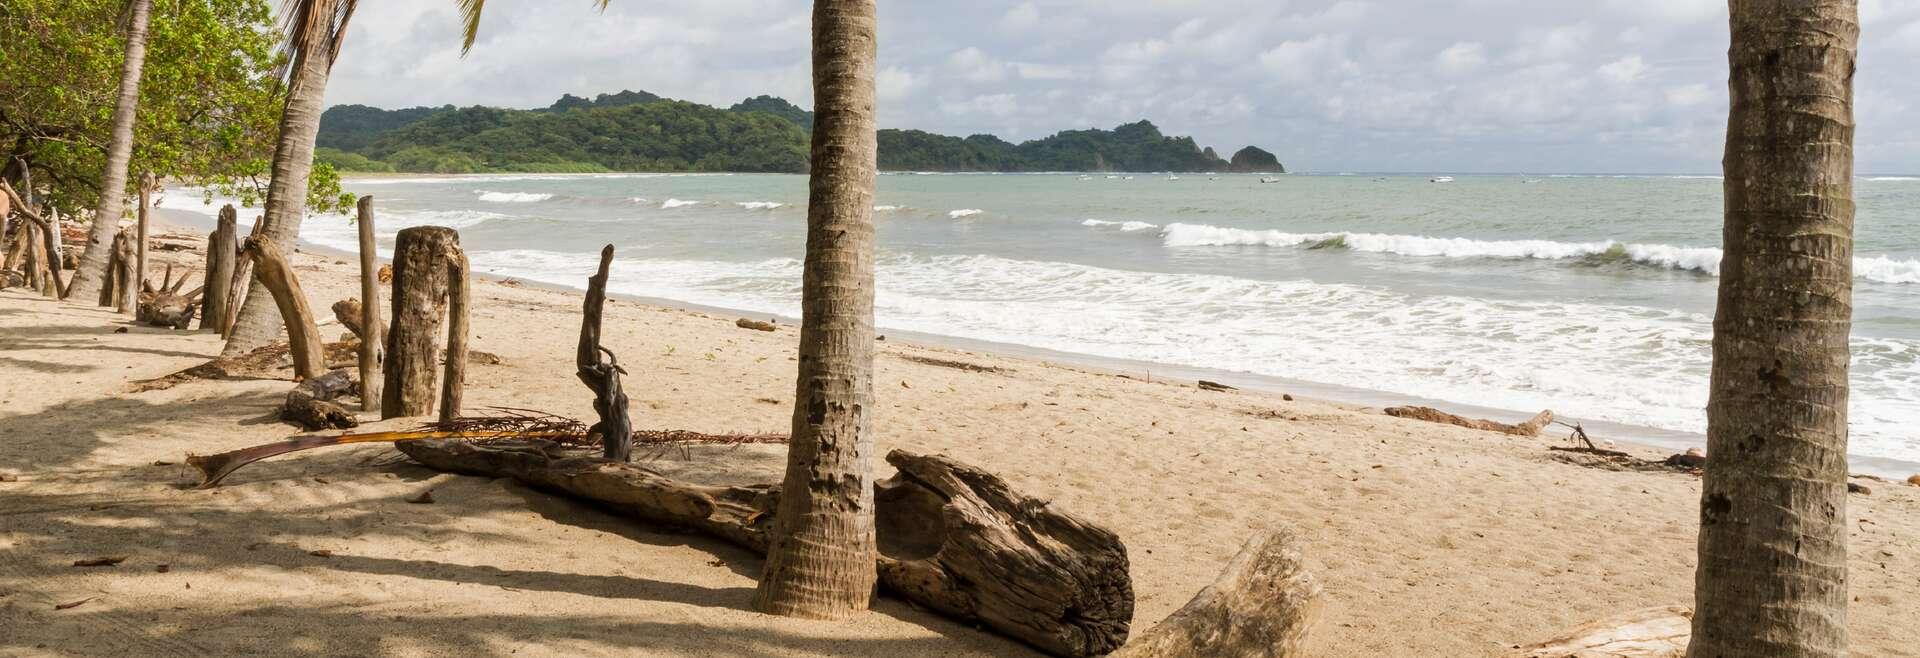 Sprachaufenthalt Costa Rica, Nosara, Strand